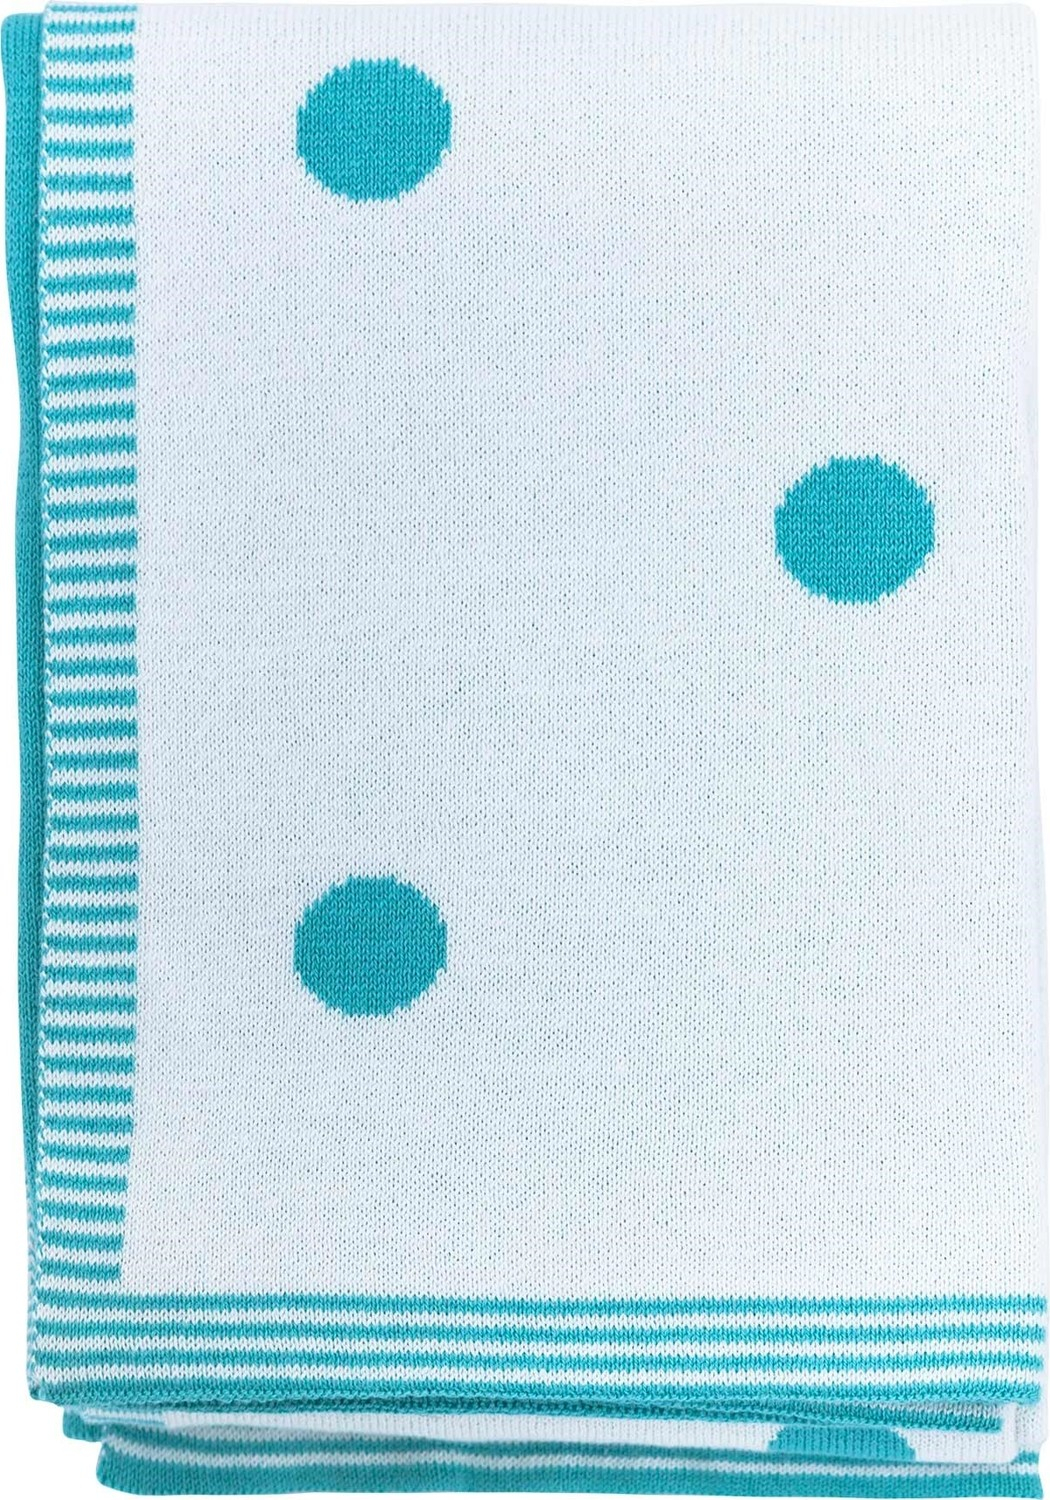 Детское одеяло Boumini в горошек, двухцветное бирюзовое и белое, 70 х 90 см